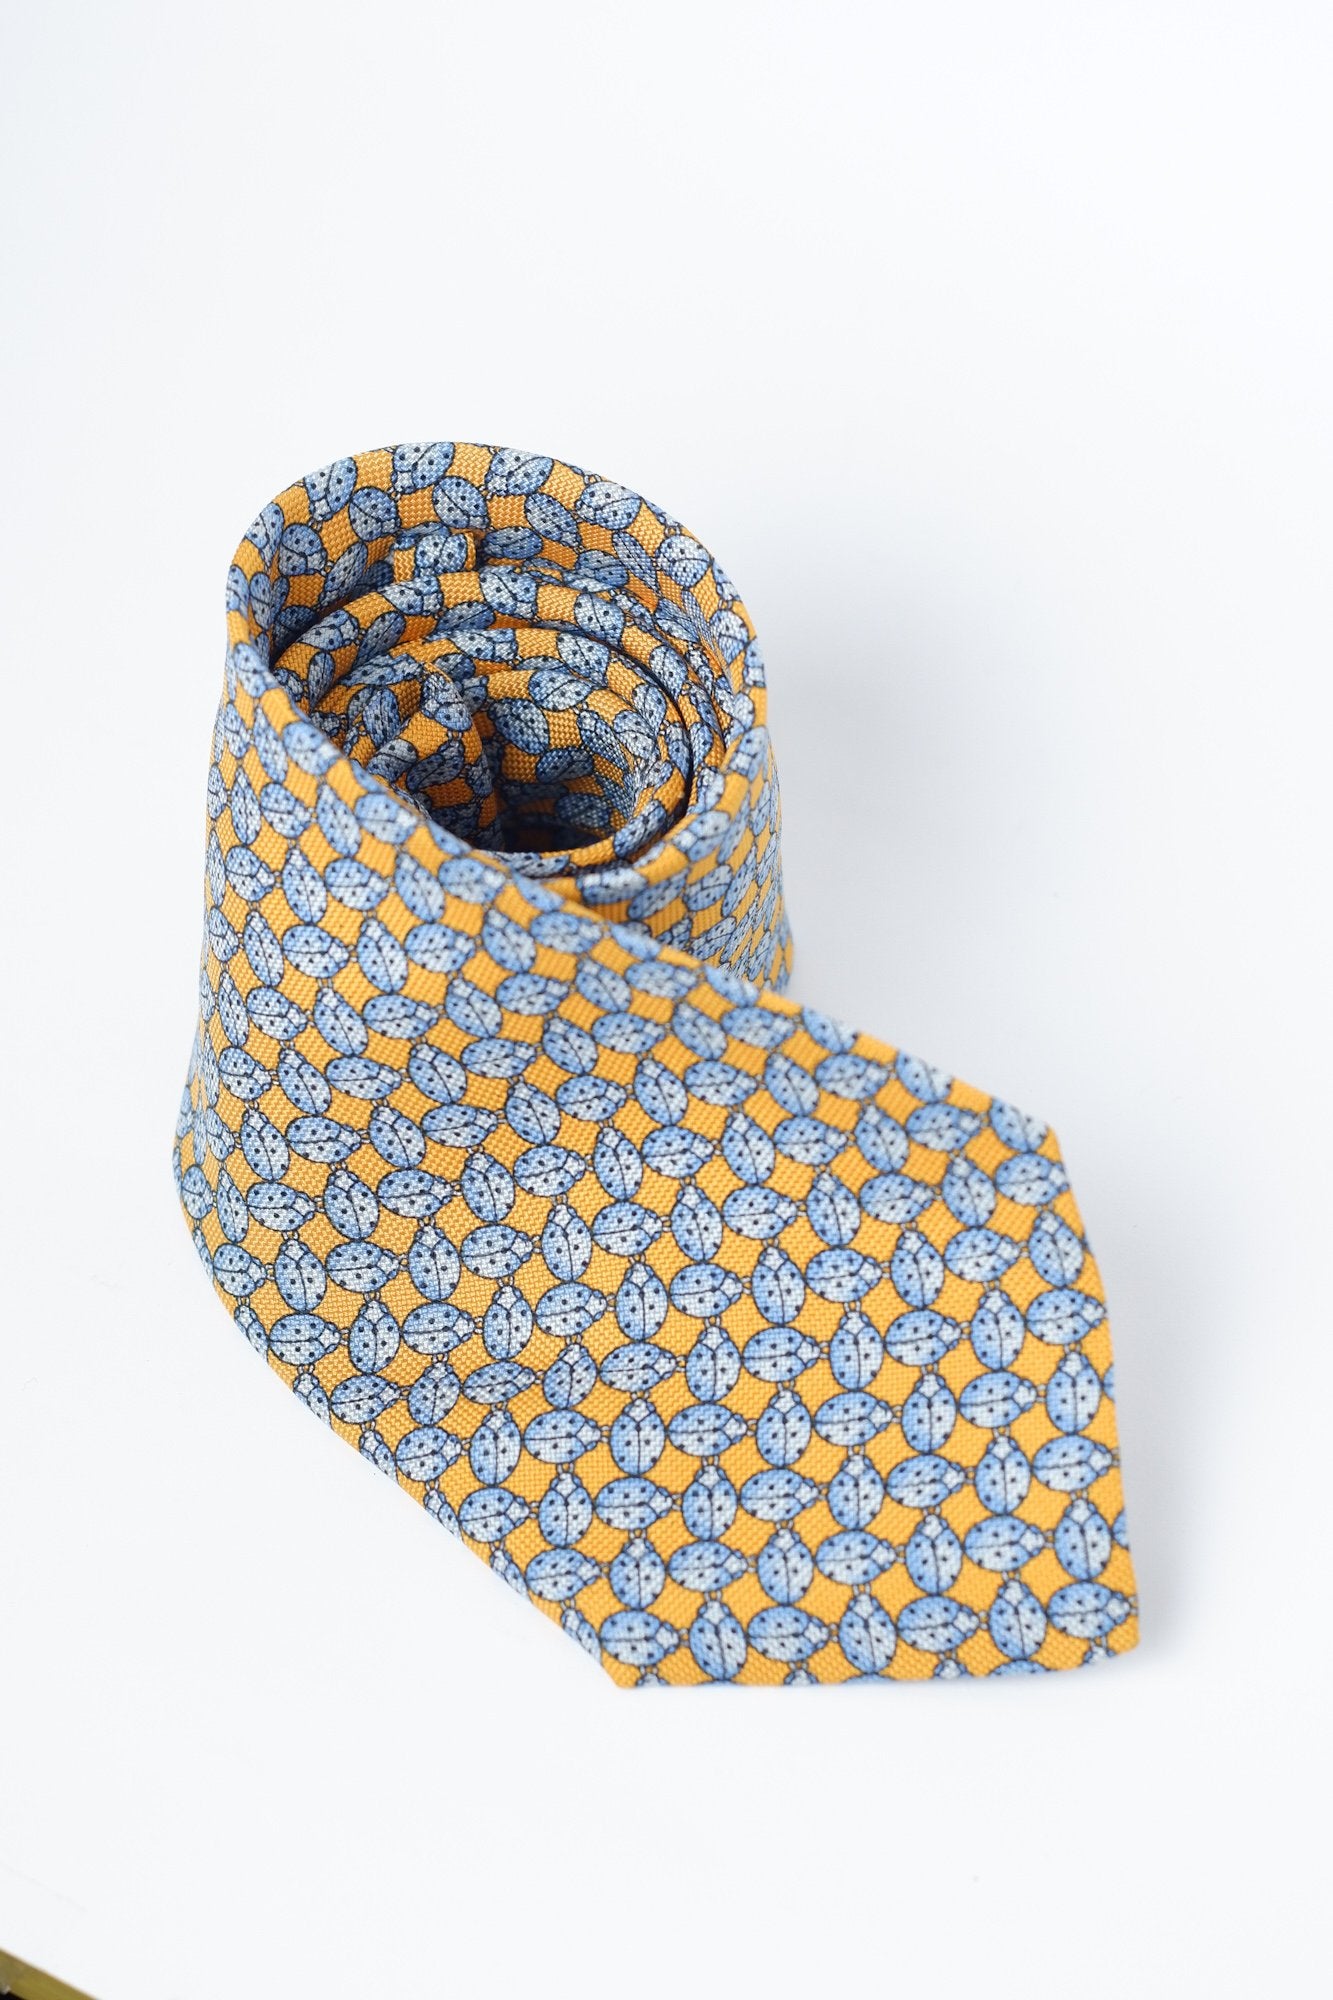 Lanolini Yellow with Blue Ladybug Necktie